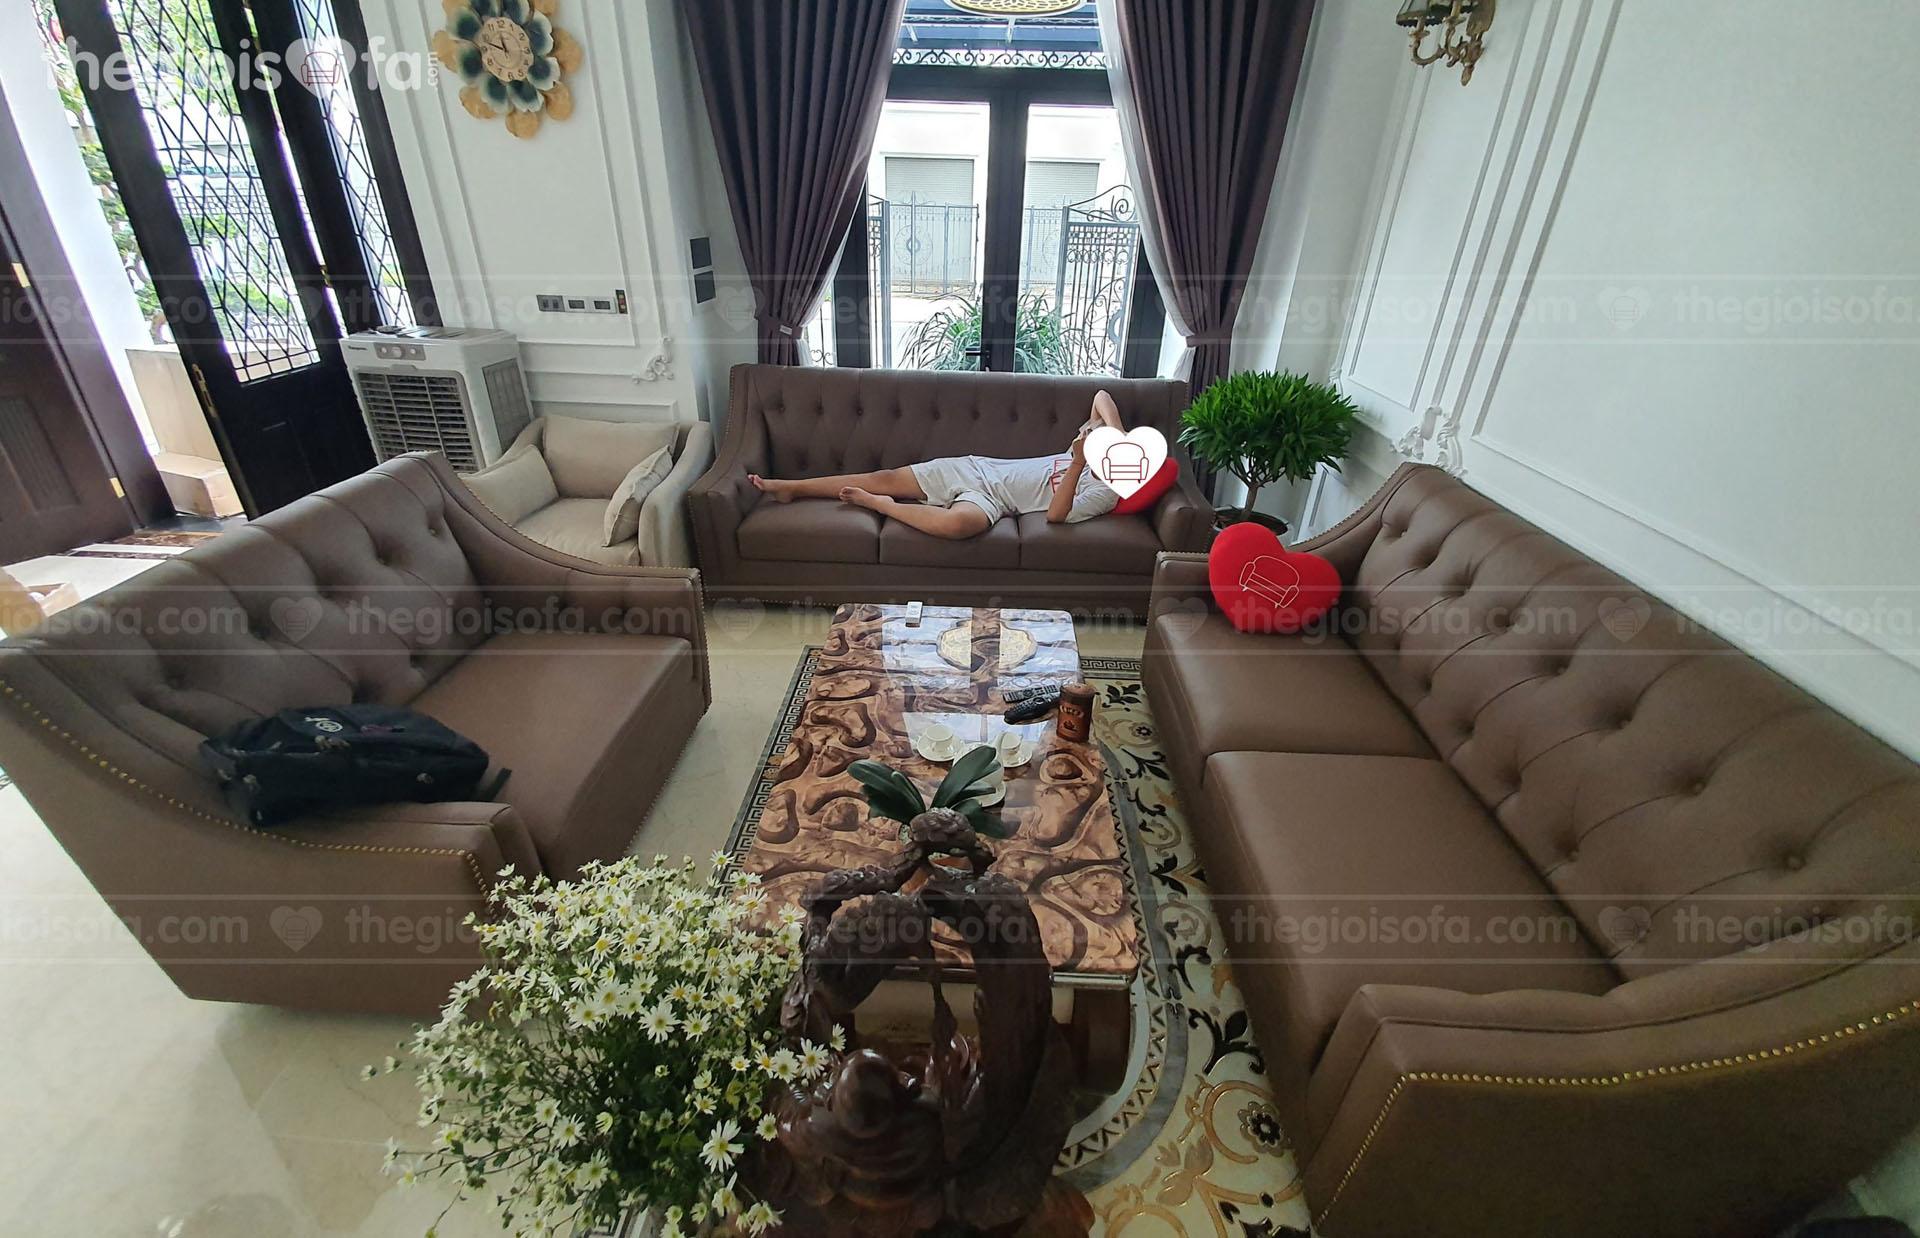 Giao hàng Combo 4 mẫu sofa da PU cao cấp, sofa nỉ đơn cho nhà chú Hùng tại Vinhome – Thanh Hóa